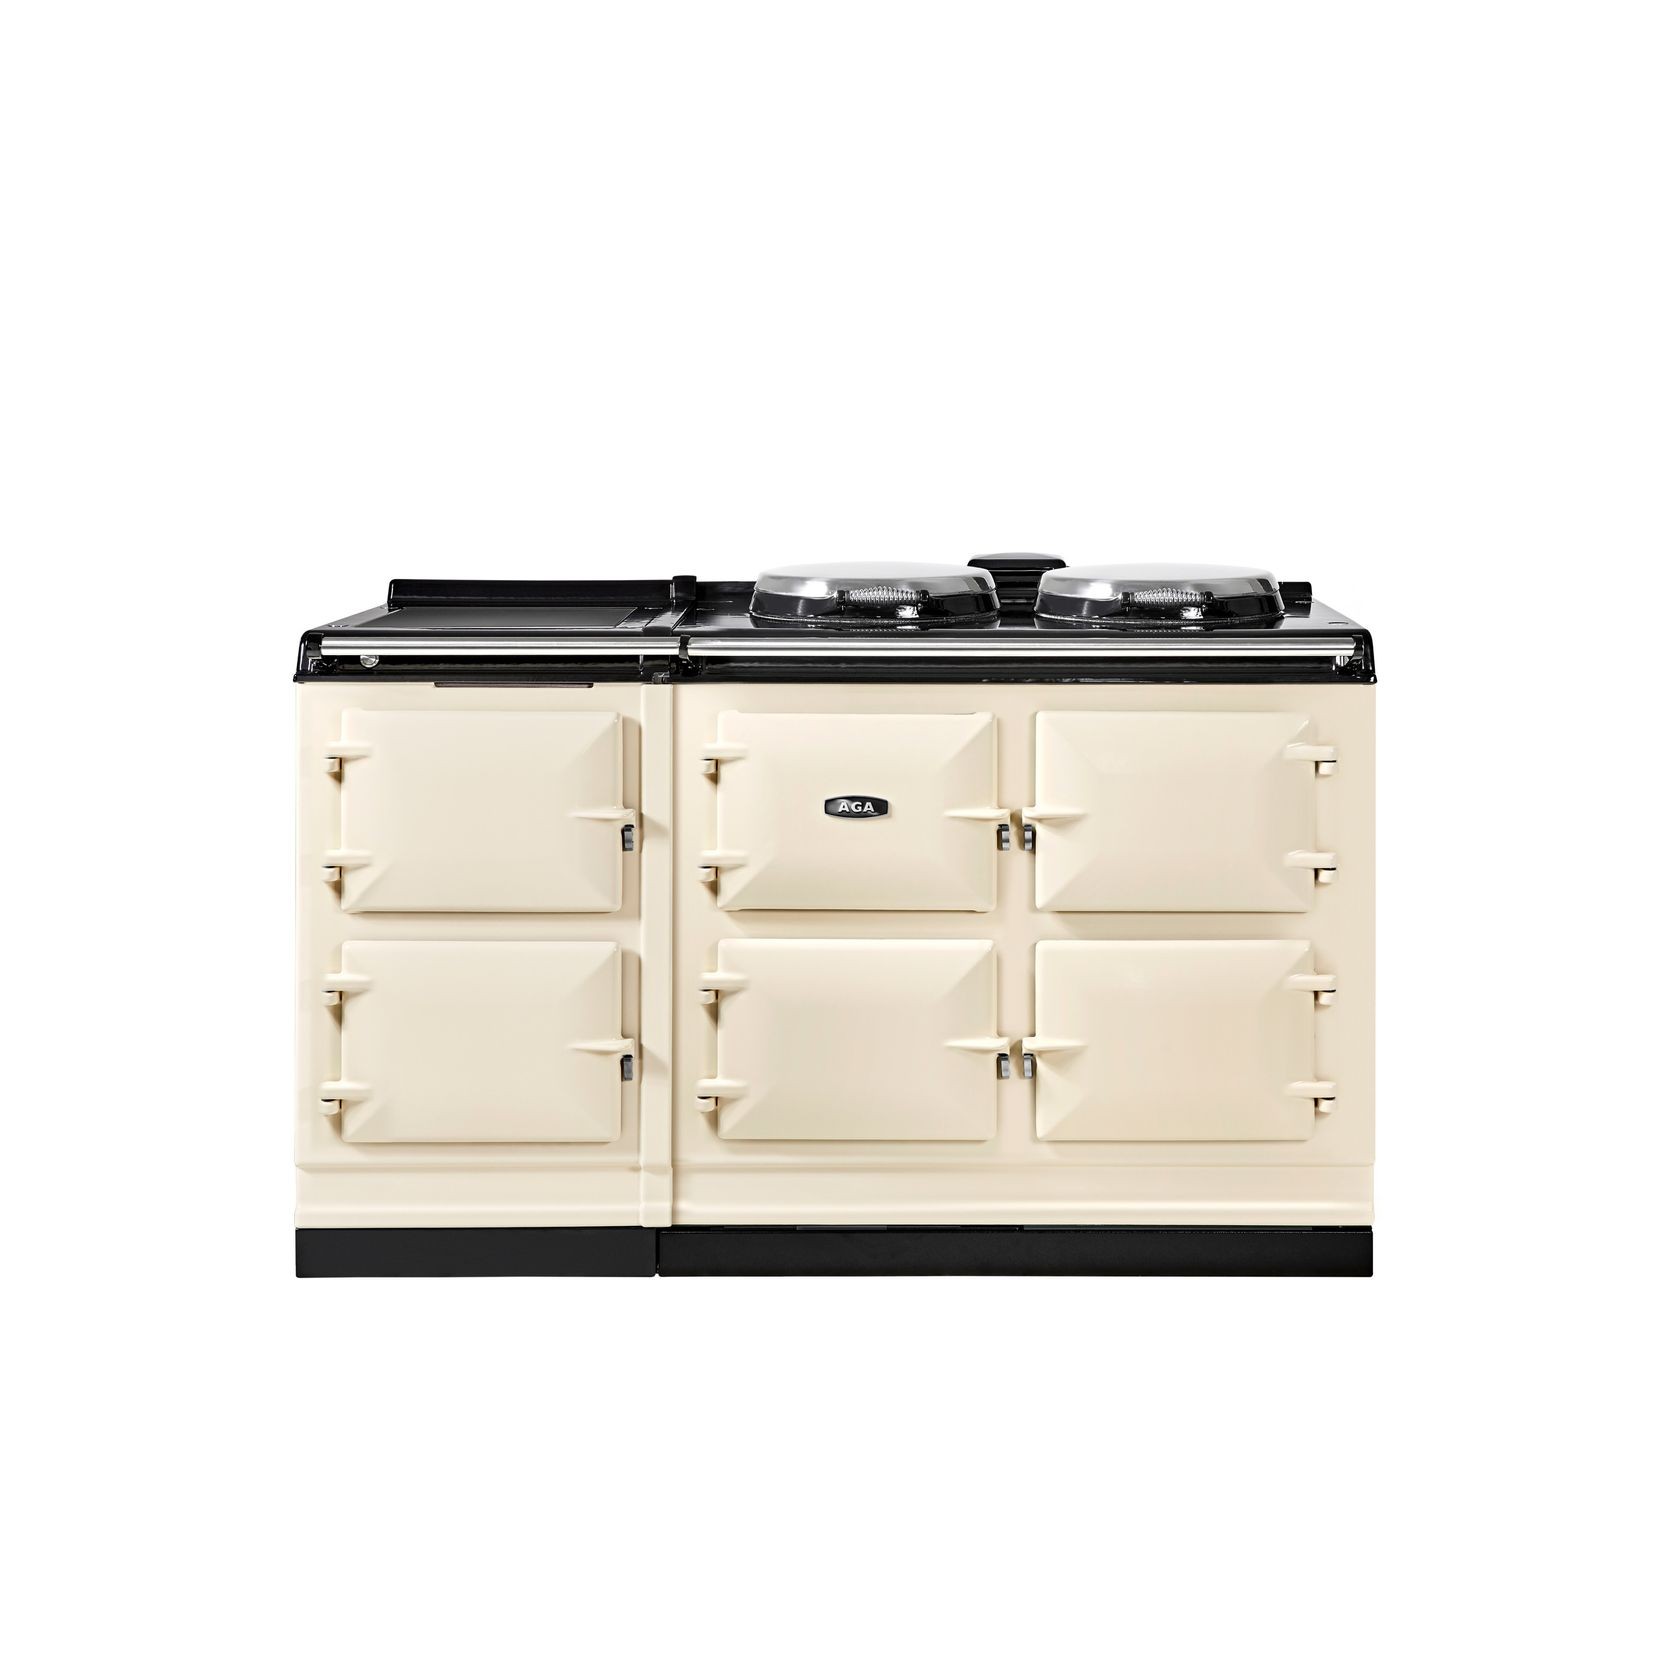 AGA | 5 Oven ER7 150 Range Cooker gallery detail image